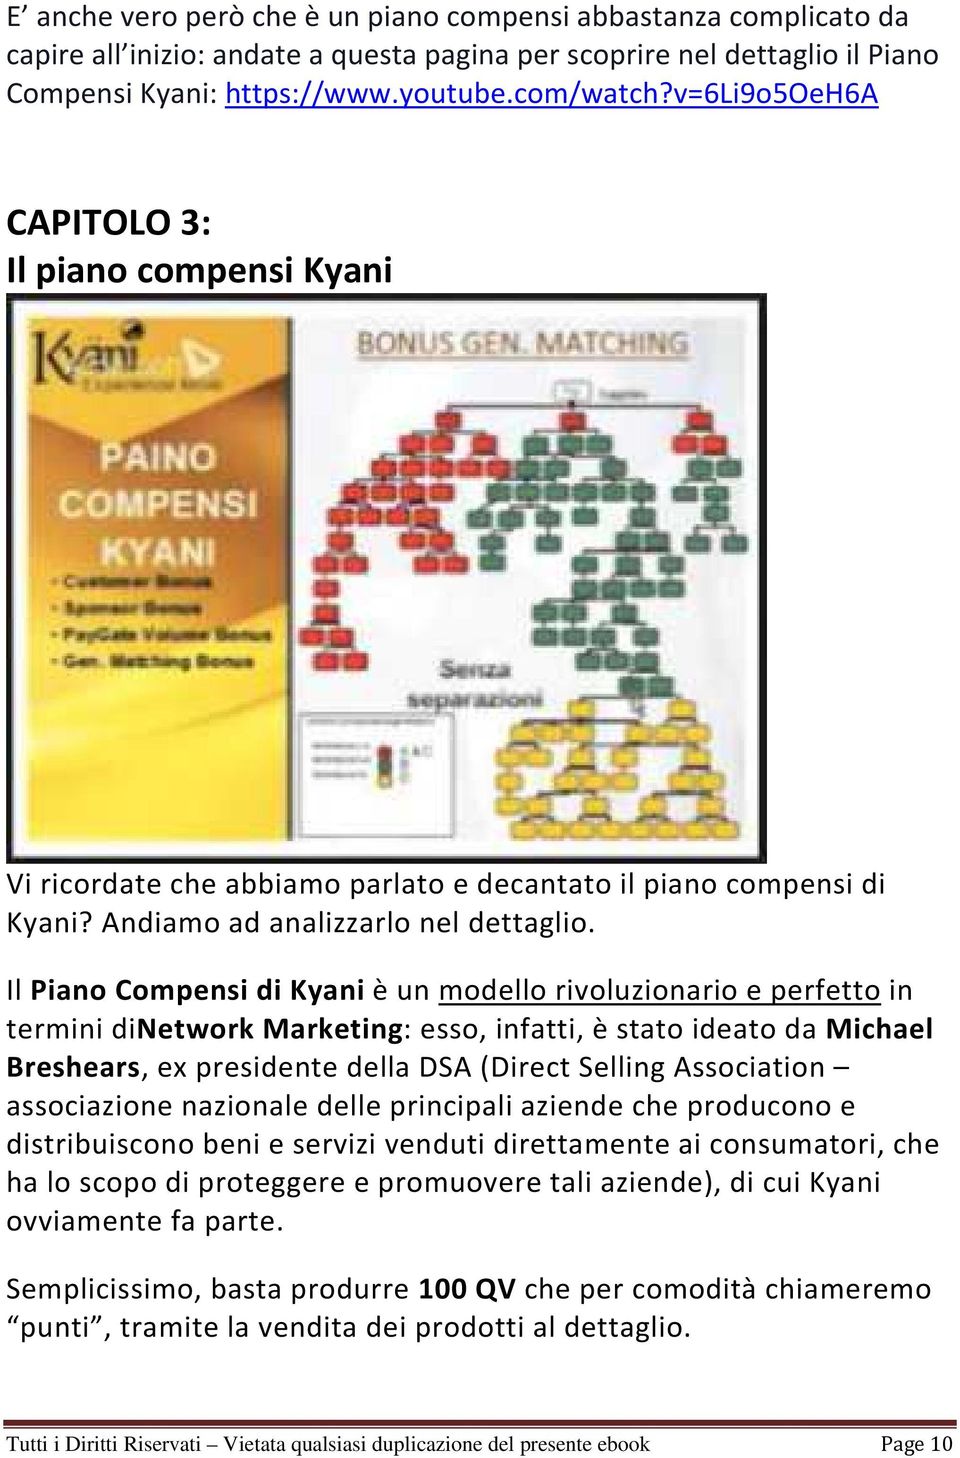 Il Piano Compensi di Kyani è un modello rivoluzionario e perfetto in termini dinetwork Marketing: esso, infatti, è stato ideato da Michael Breshears, ex presidente della DSA (Direct Selling